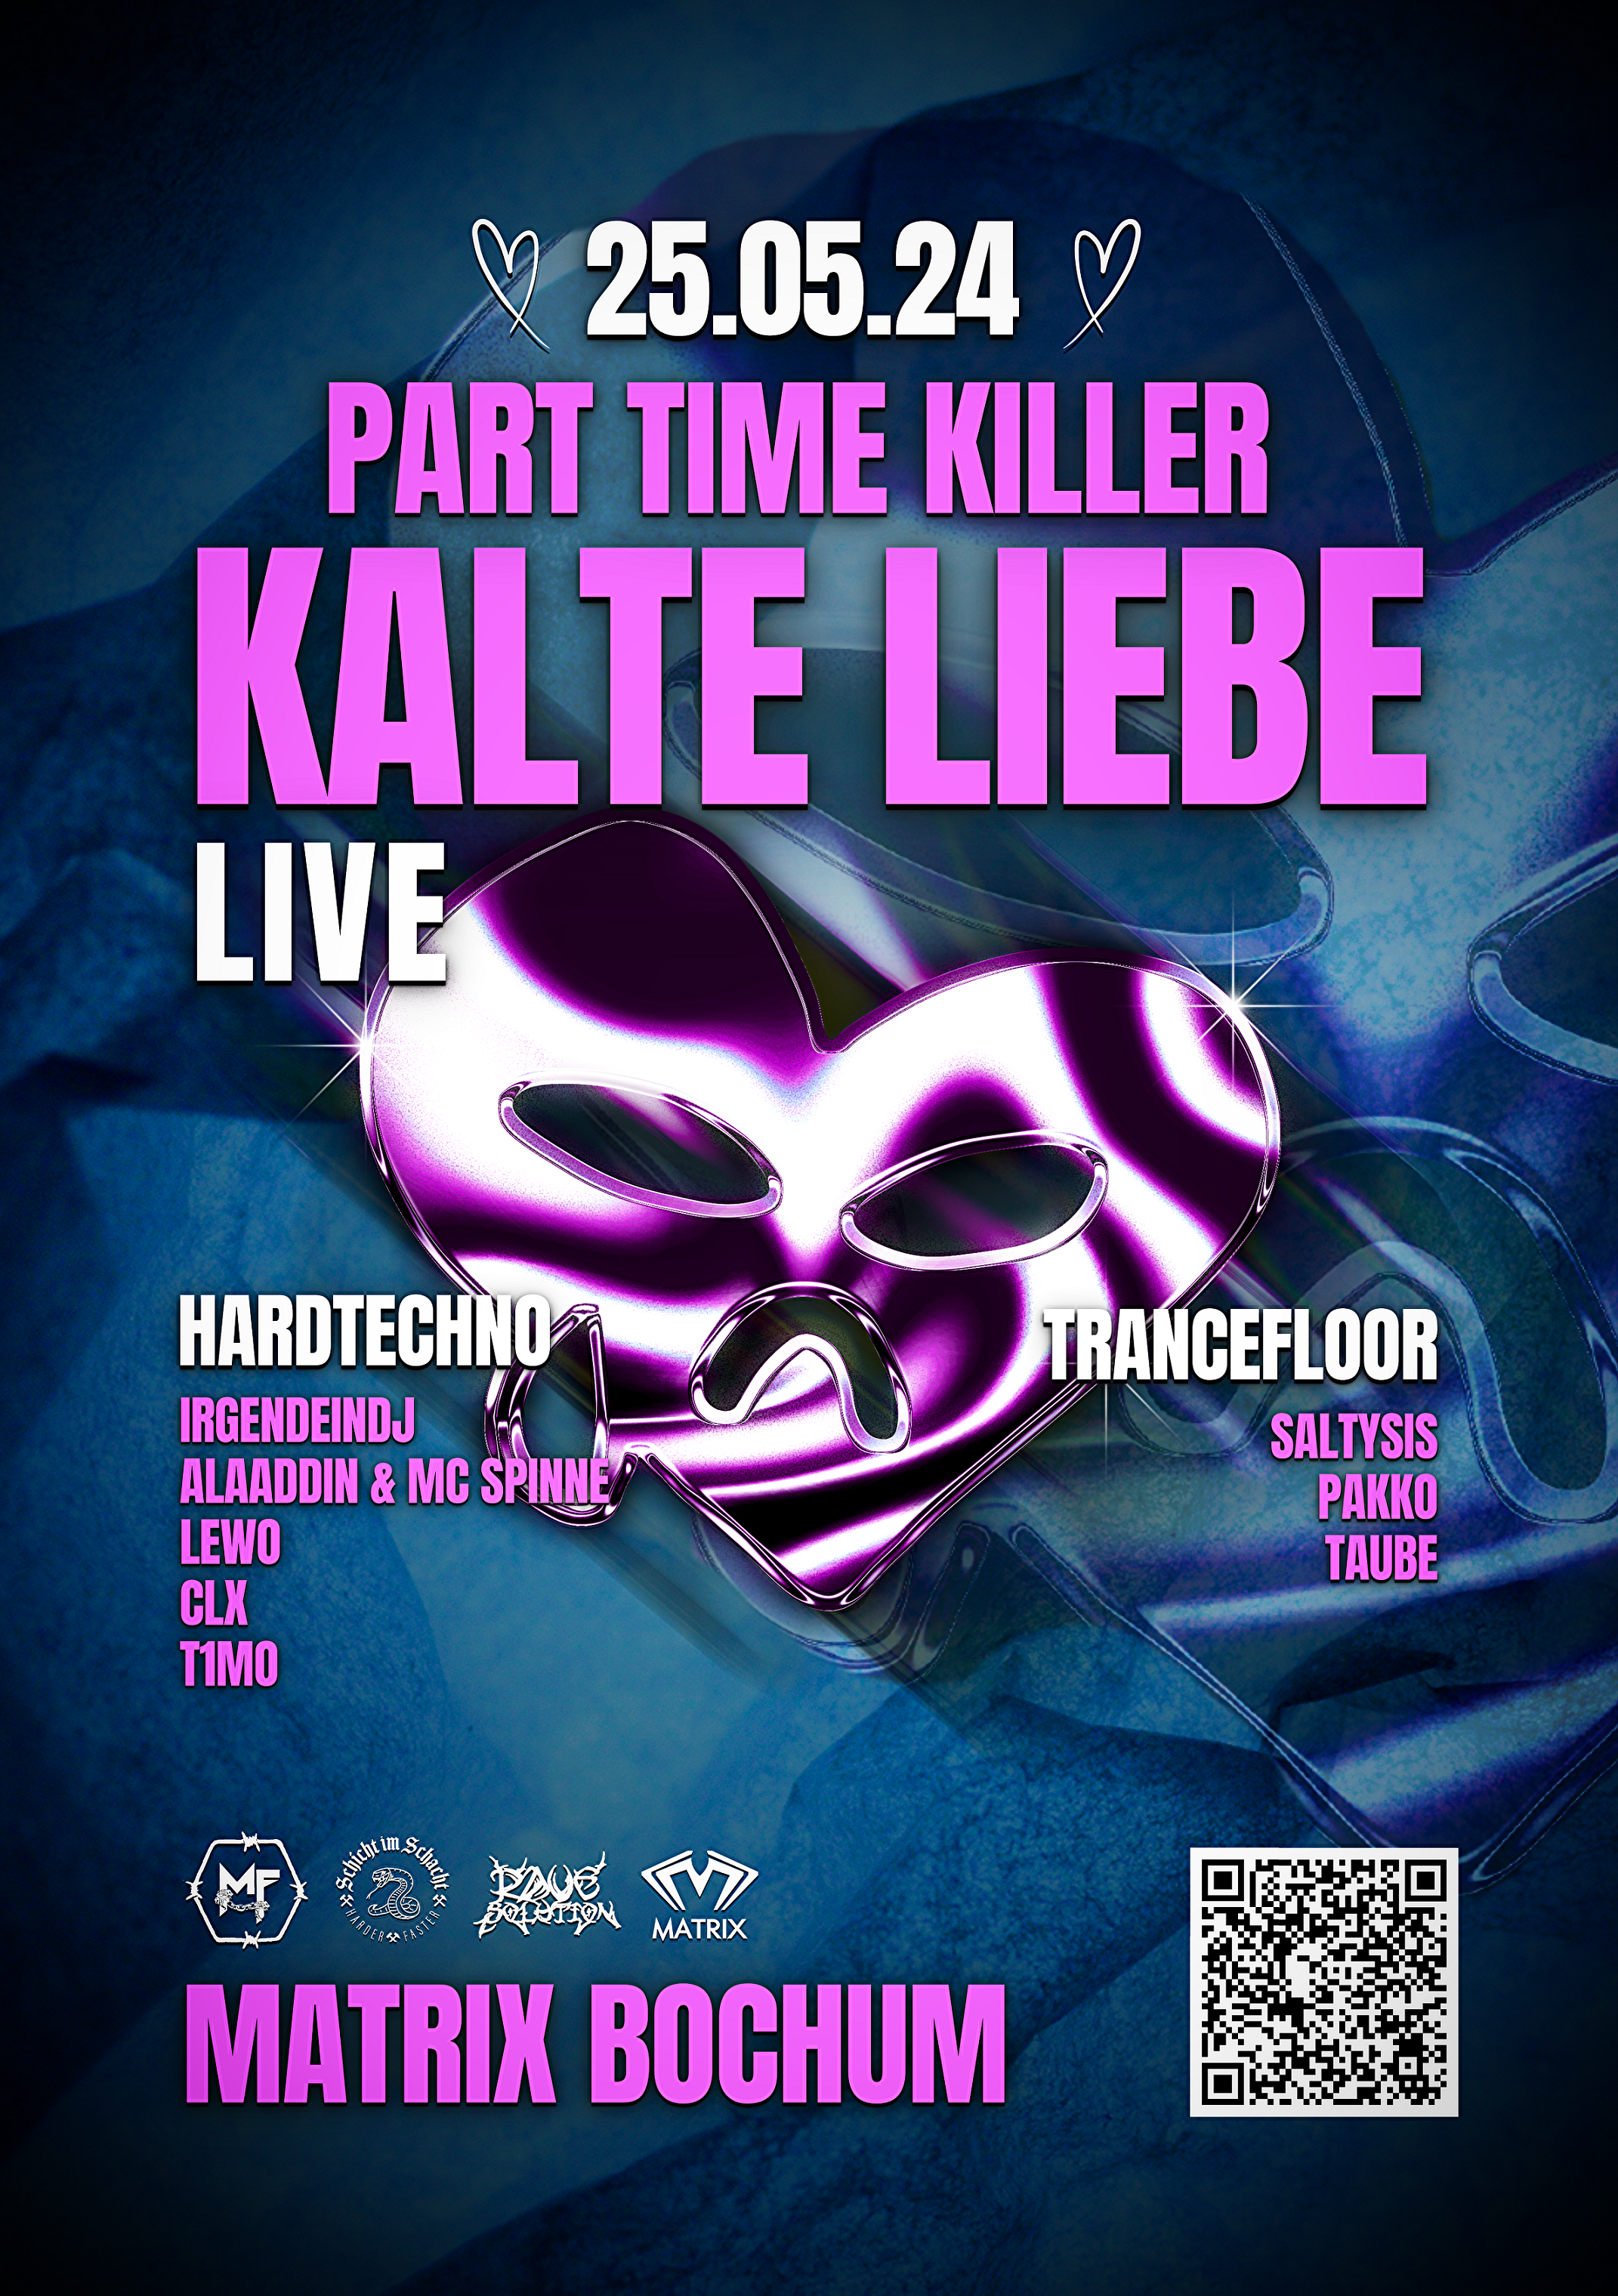 UNTOLD with Kalte Liebe [LIVE] - Página frontal